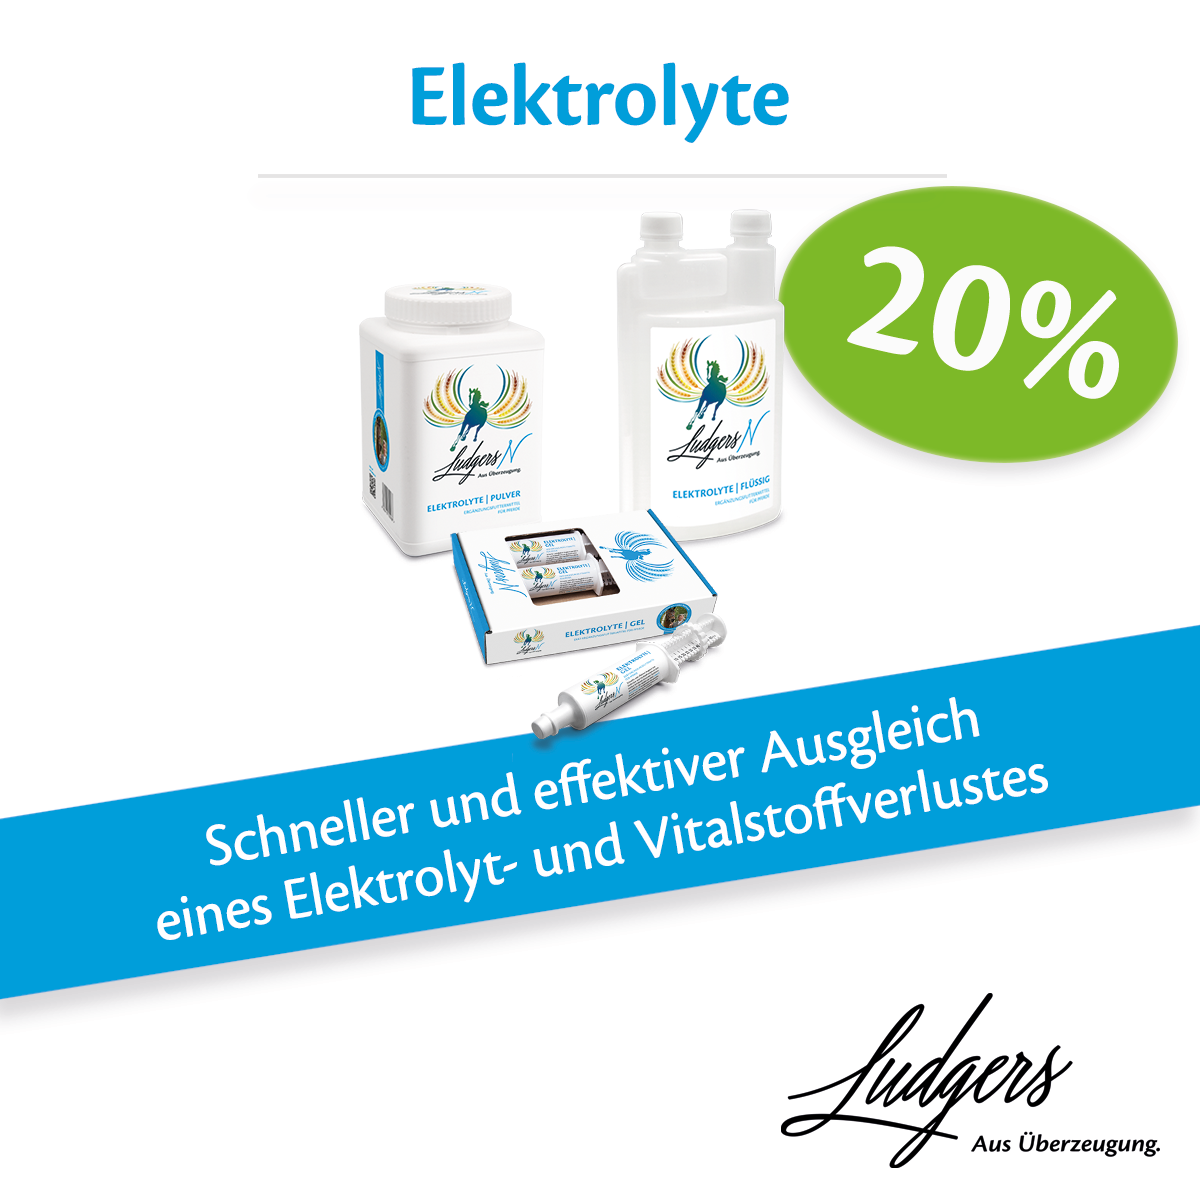 Ludgers Elektrolyte Produkte - 20% Rabatt sichern! (Werbung ...